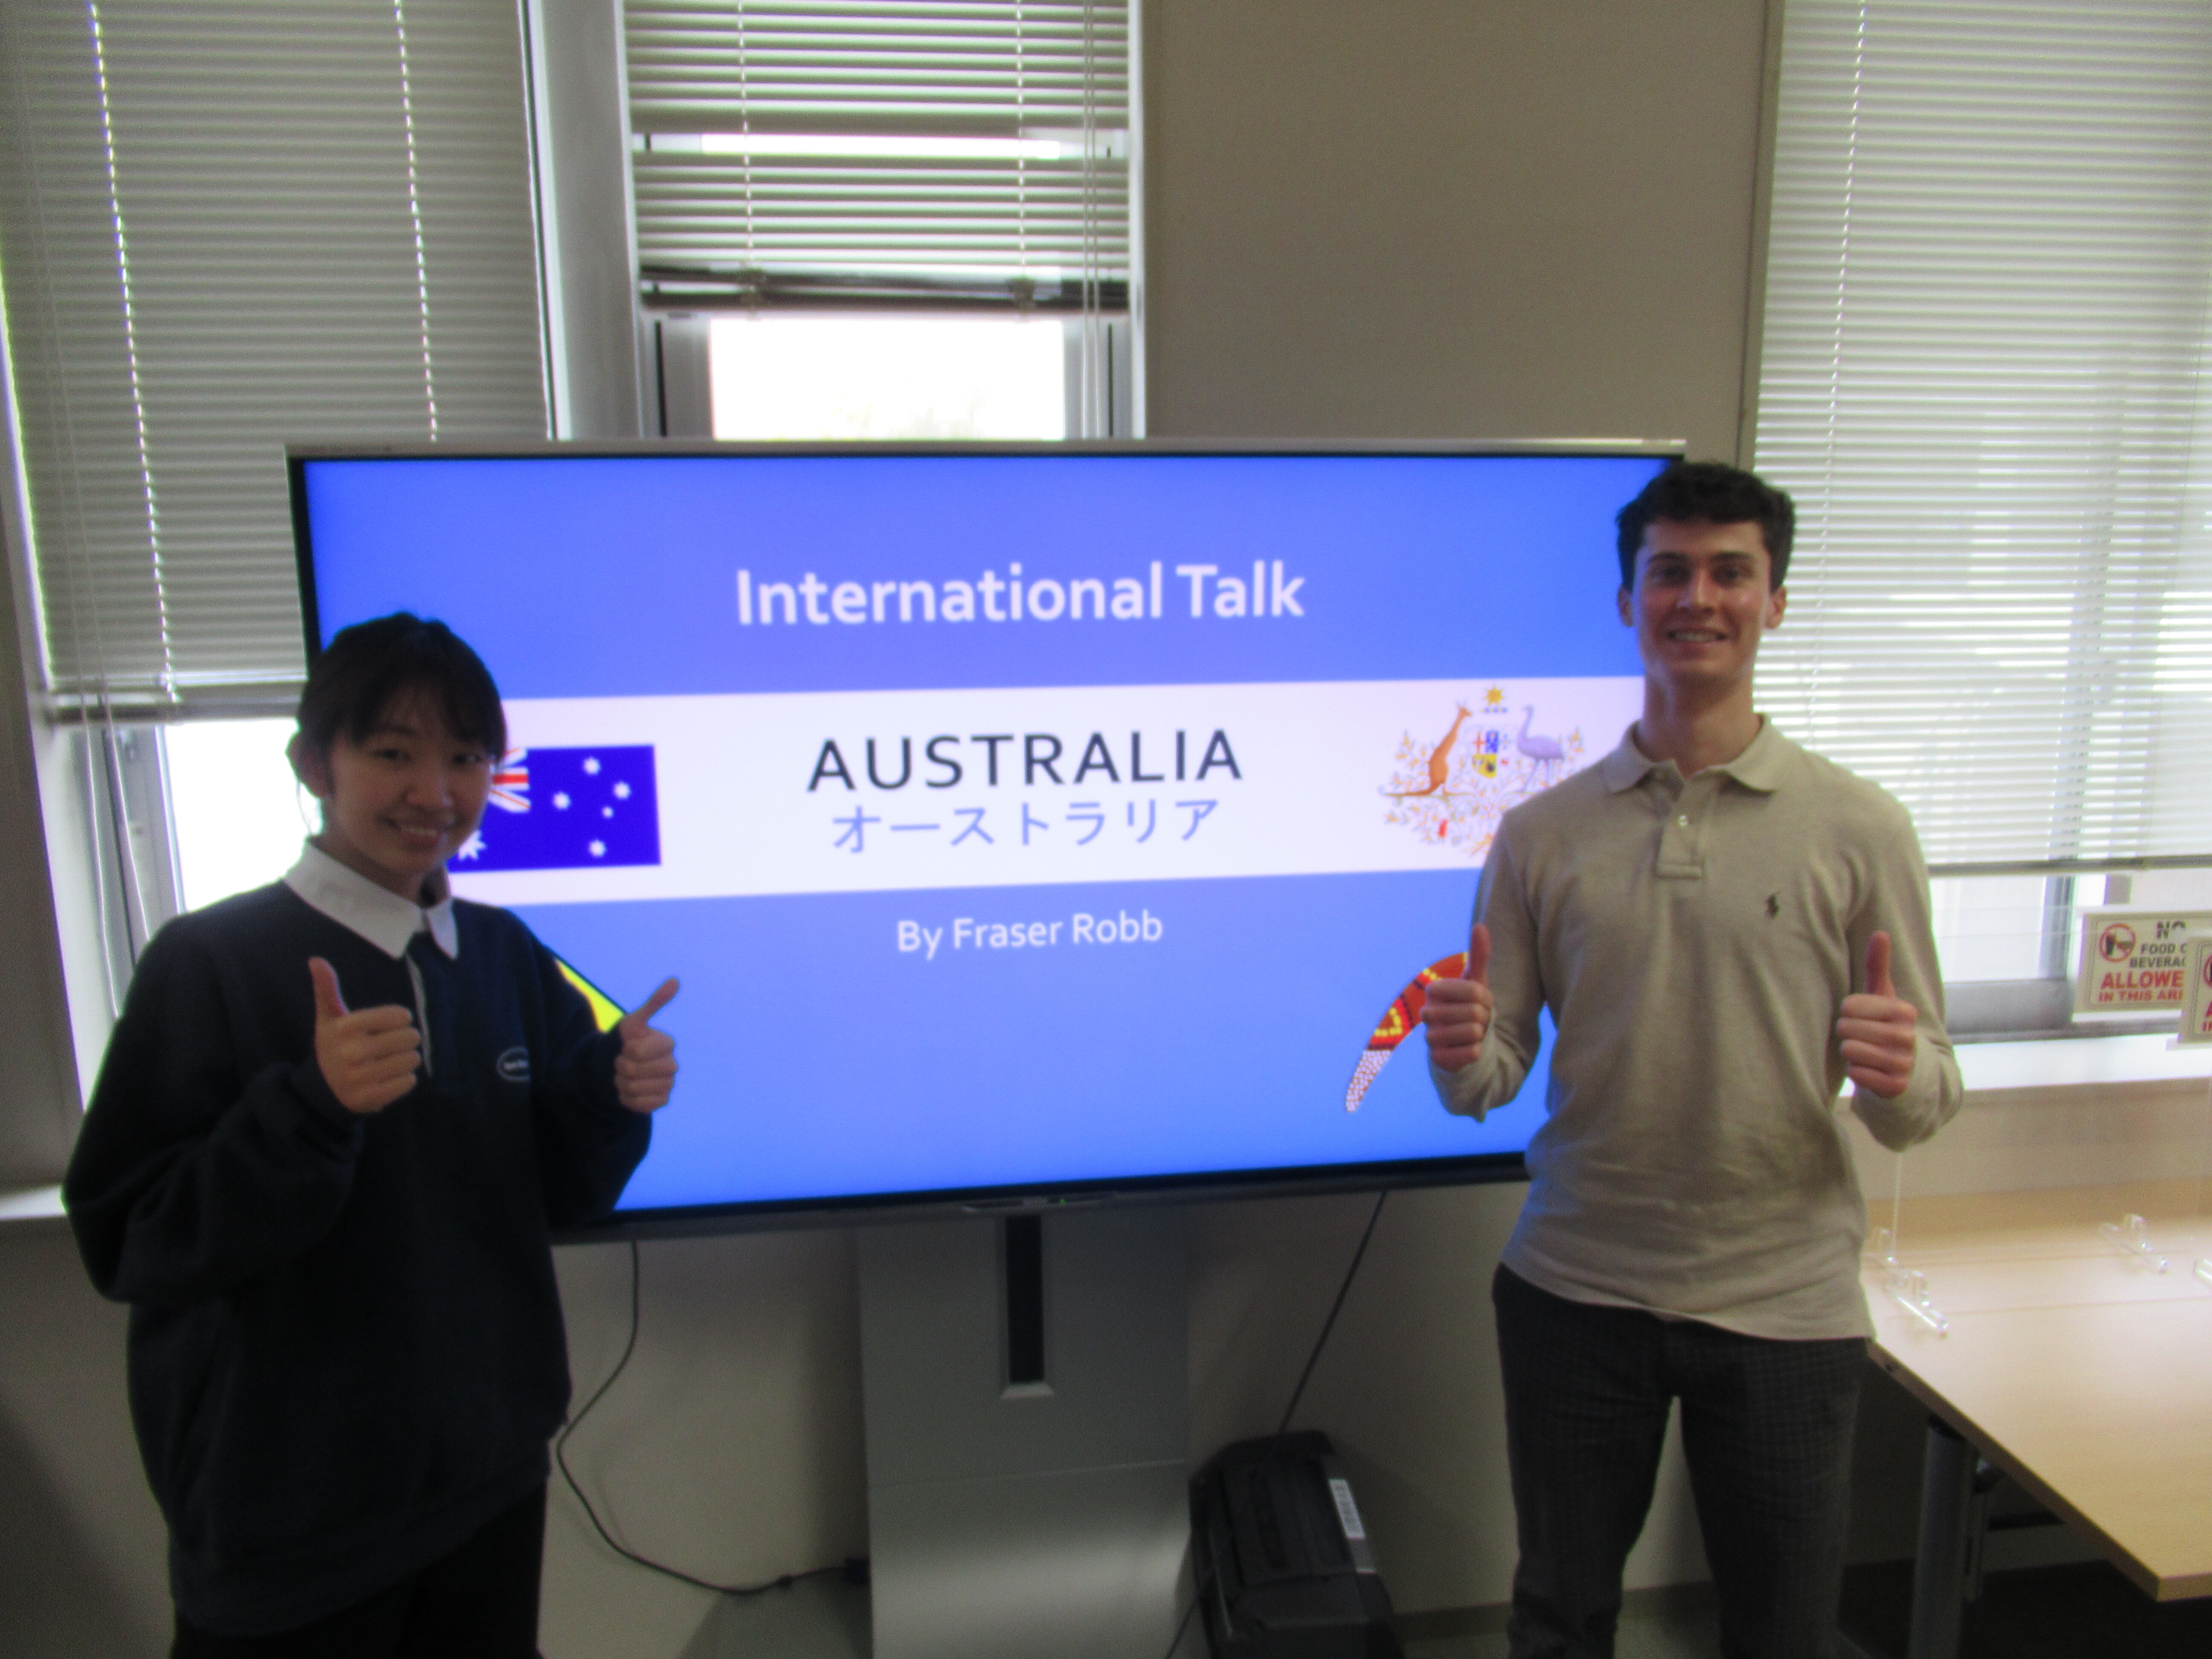 International Talk: Lets learn about Australia online!